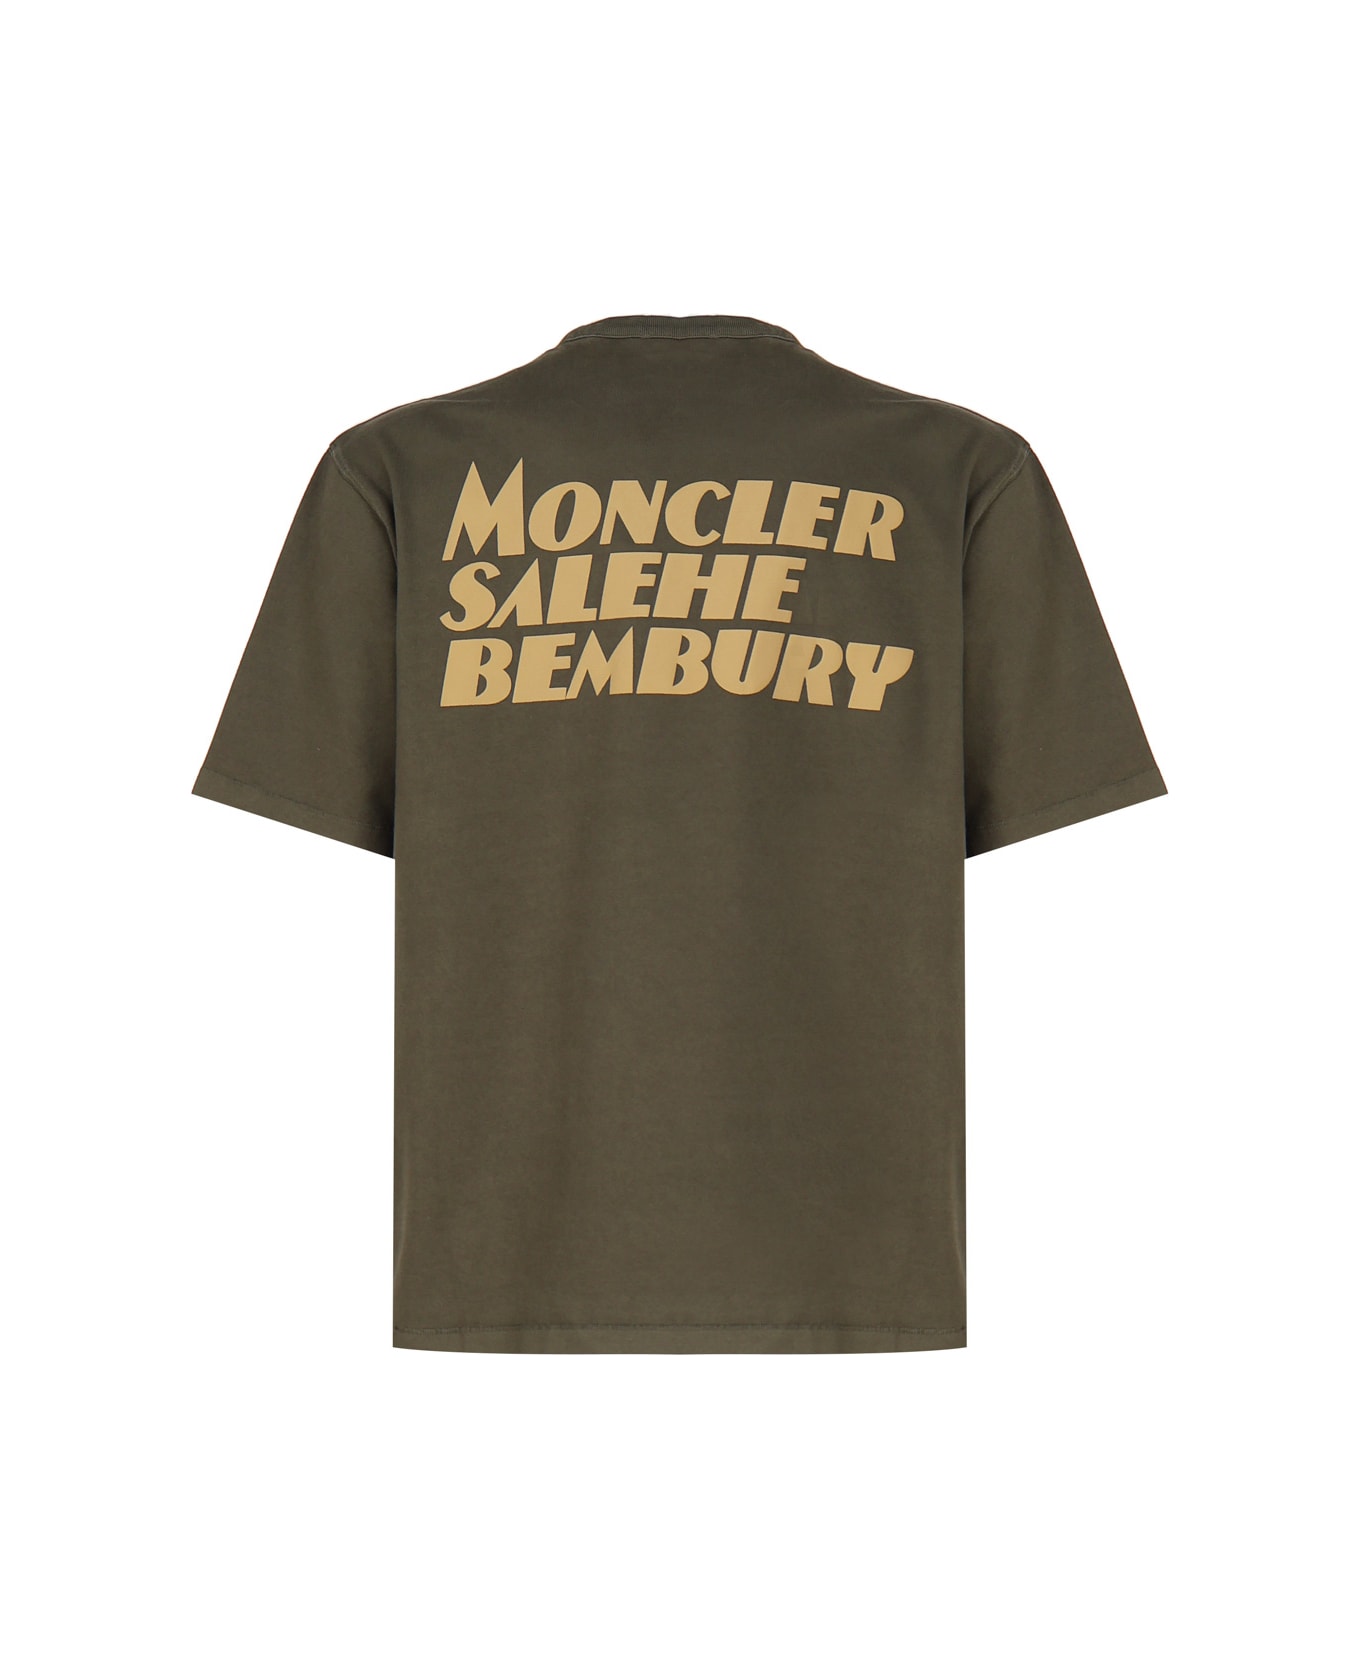 Moncler Genius Moncler X Salehe Bembury T-shirt - Green Tシャツ